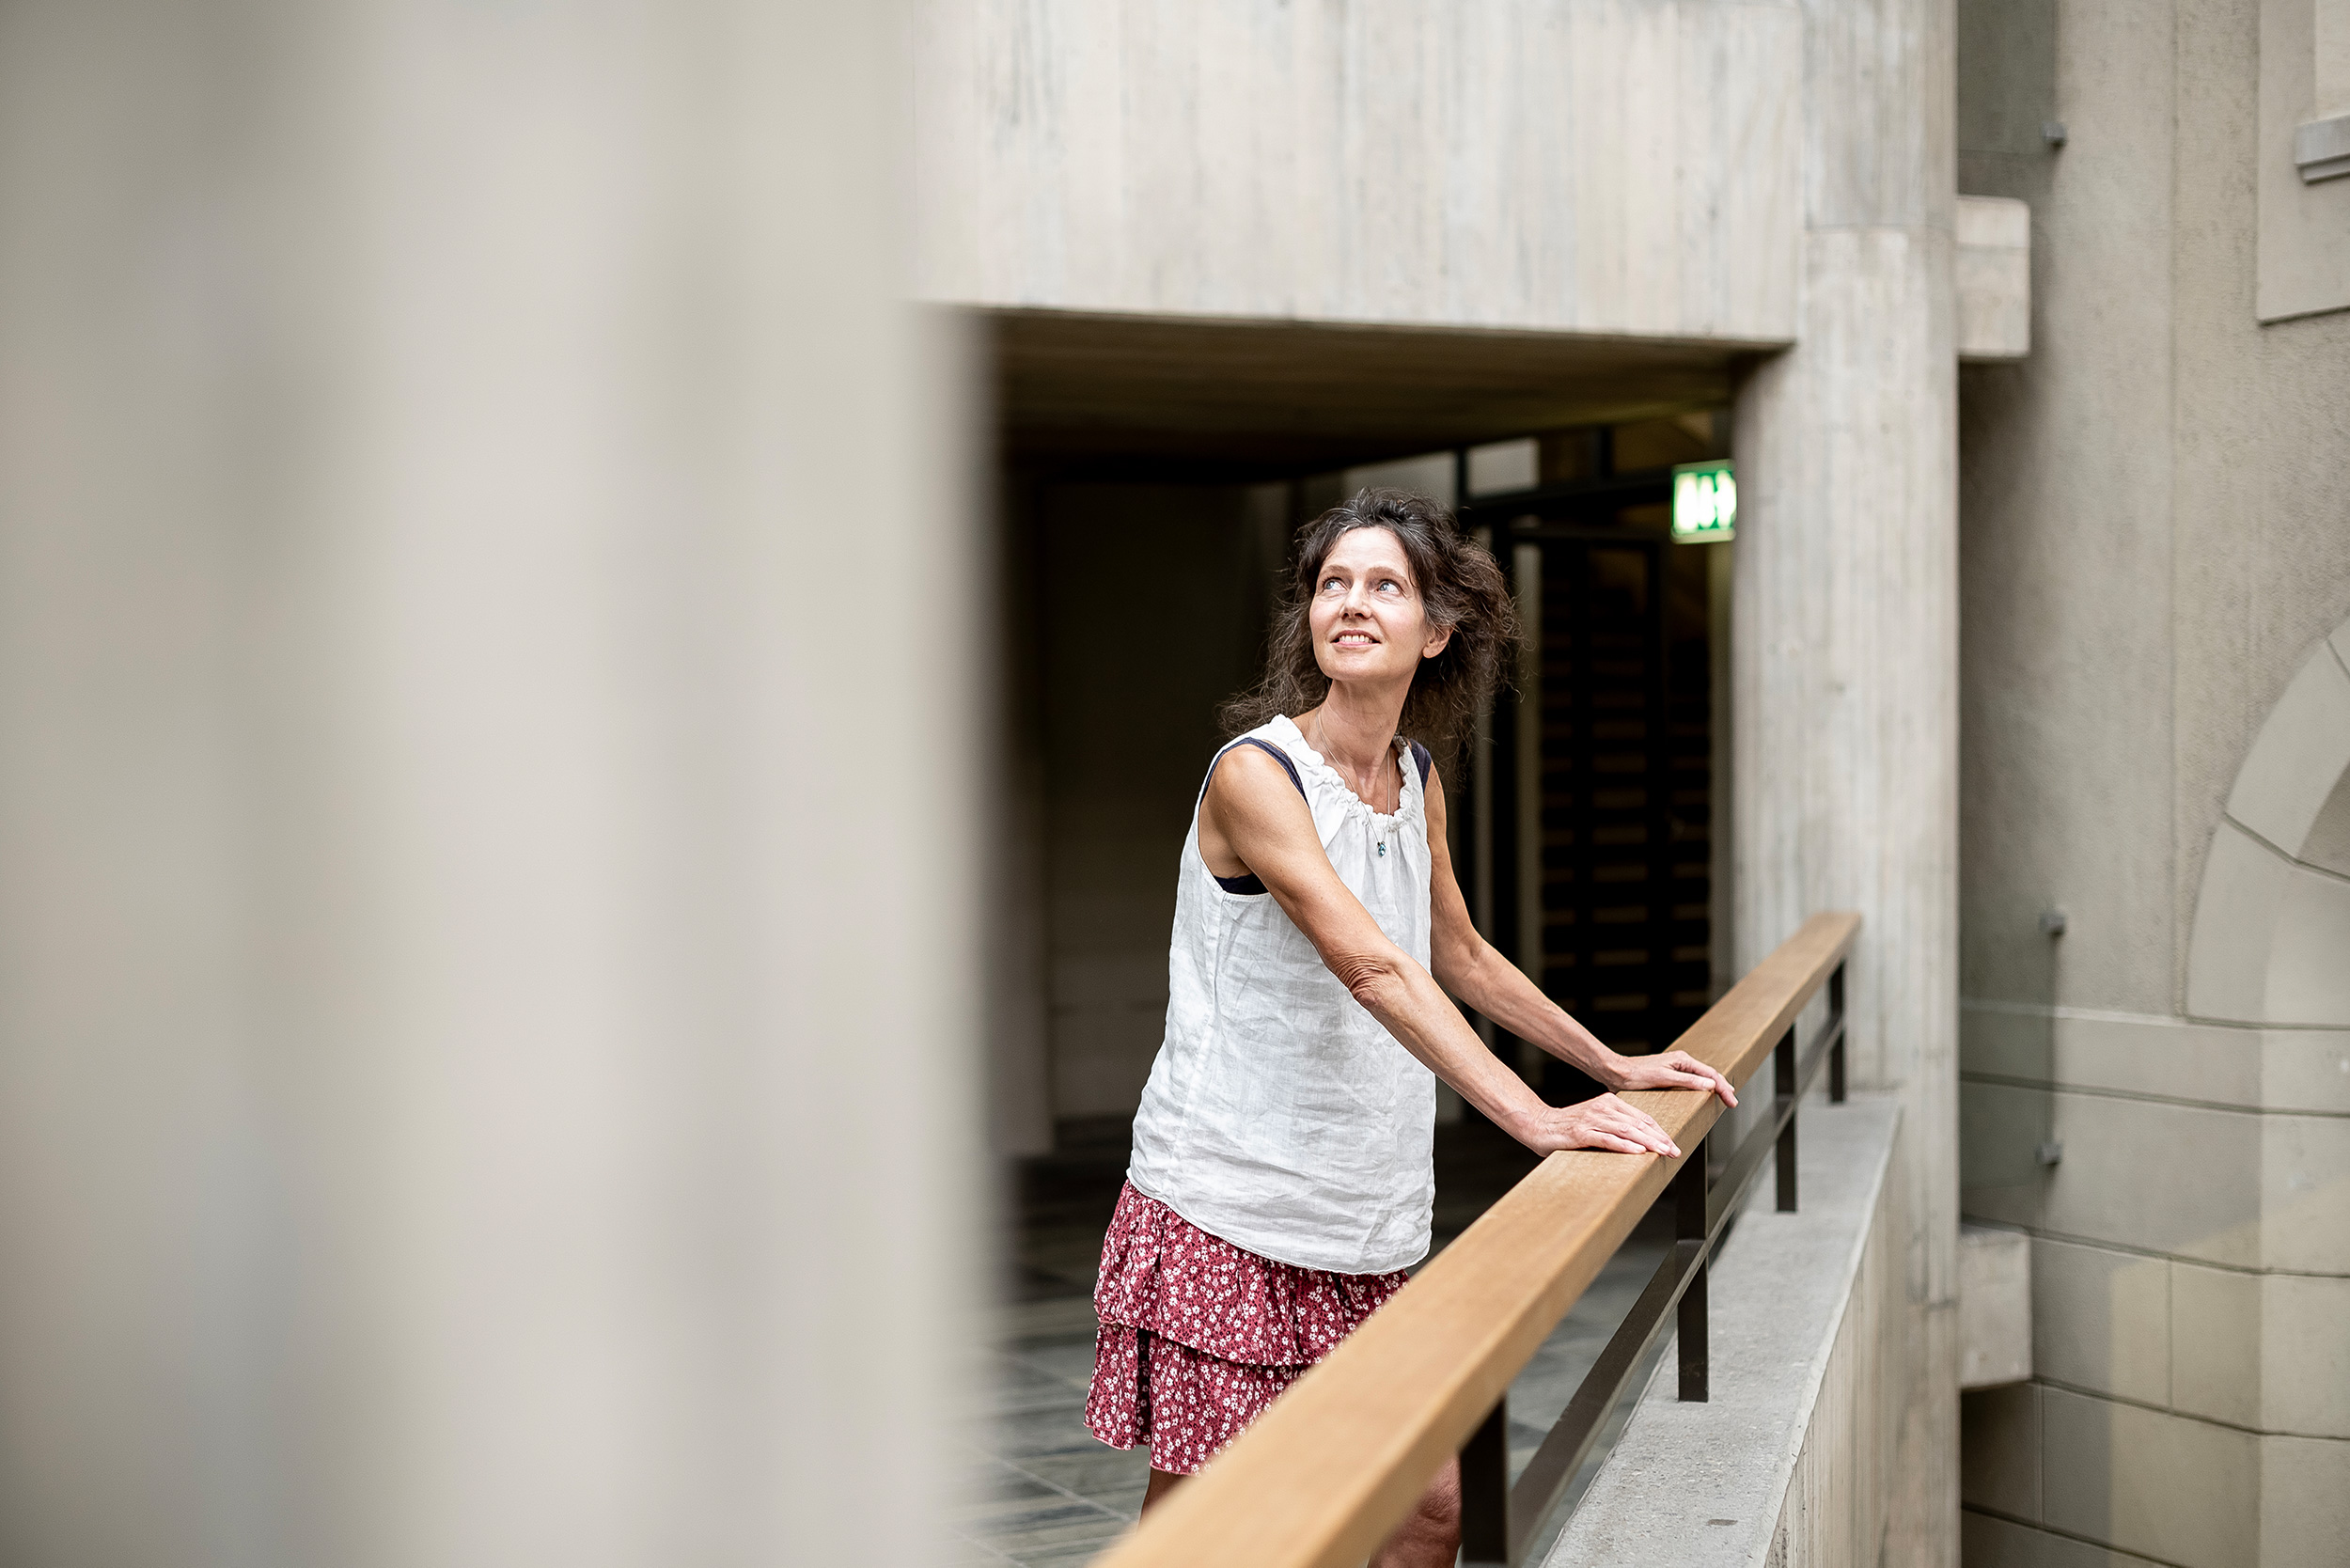 Sara van der Geer im ETH Zentum Gebäude, sie stützt sich am Geländer ab und schaut lächelnd zur Decke hoch.